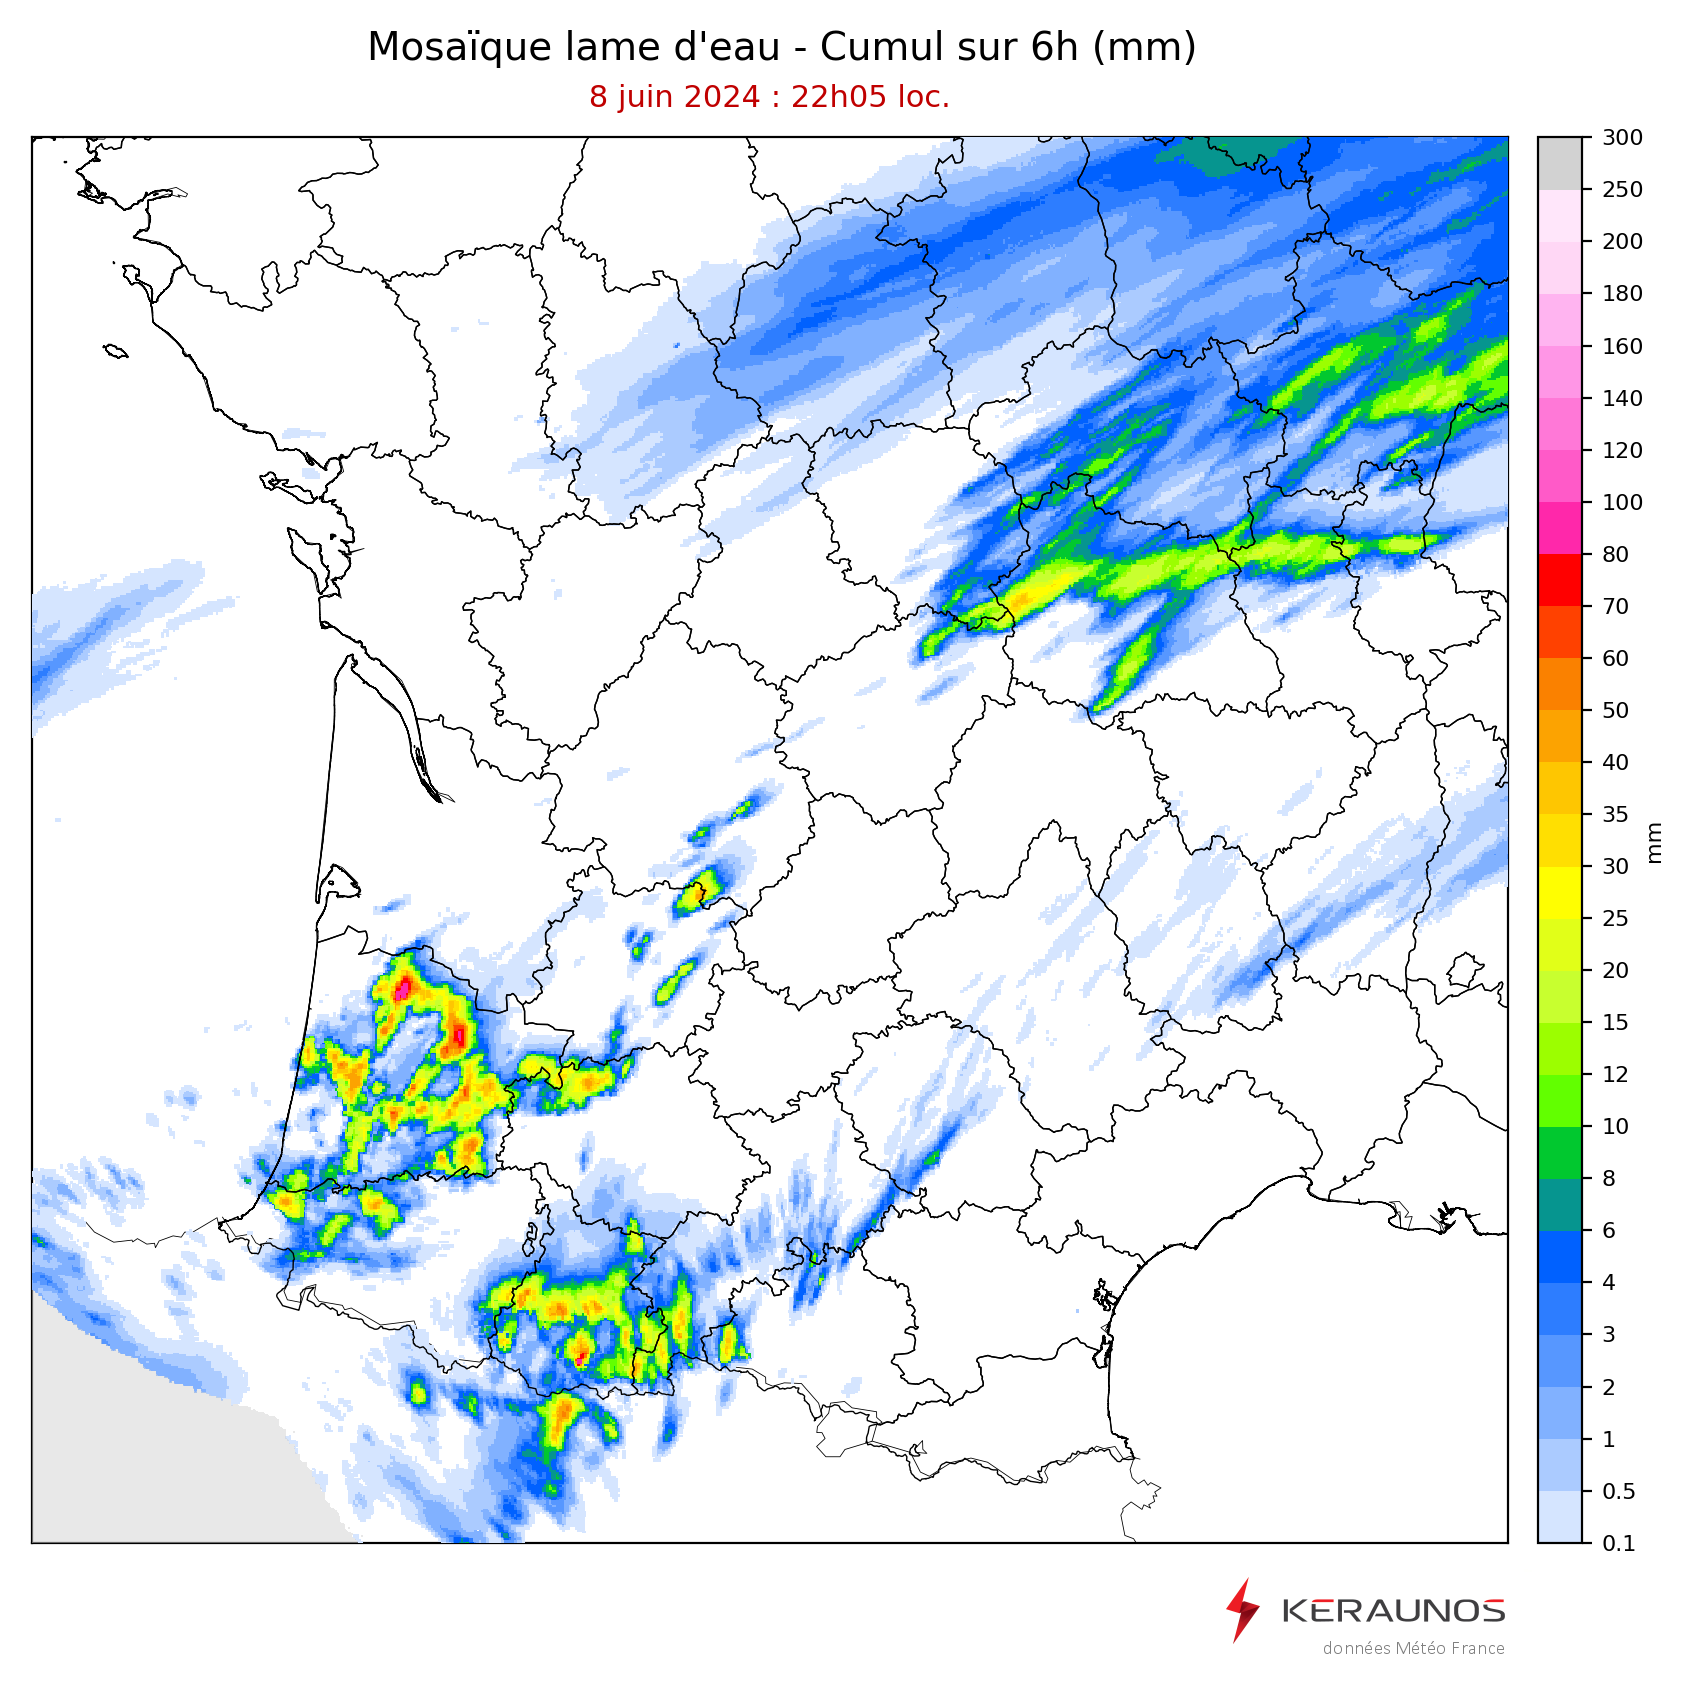 <p>Des orages très pluvieux et peu mobiles affectent le sud de l'Aquitaine depuis la fin d'après-midi. Certaines lames d'eau avoisinent 80 mm, parfois tombés en 1 heure seulement, comme à Pissos ou Trensacq dans les Landes.</p>